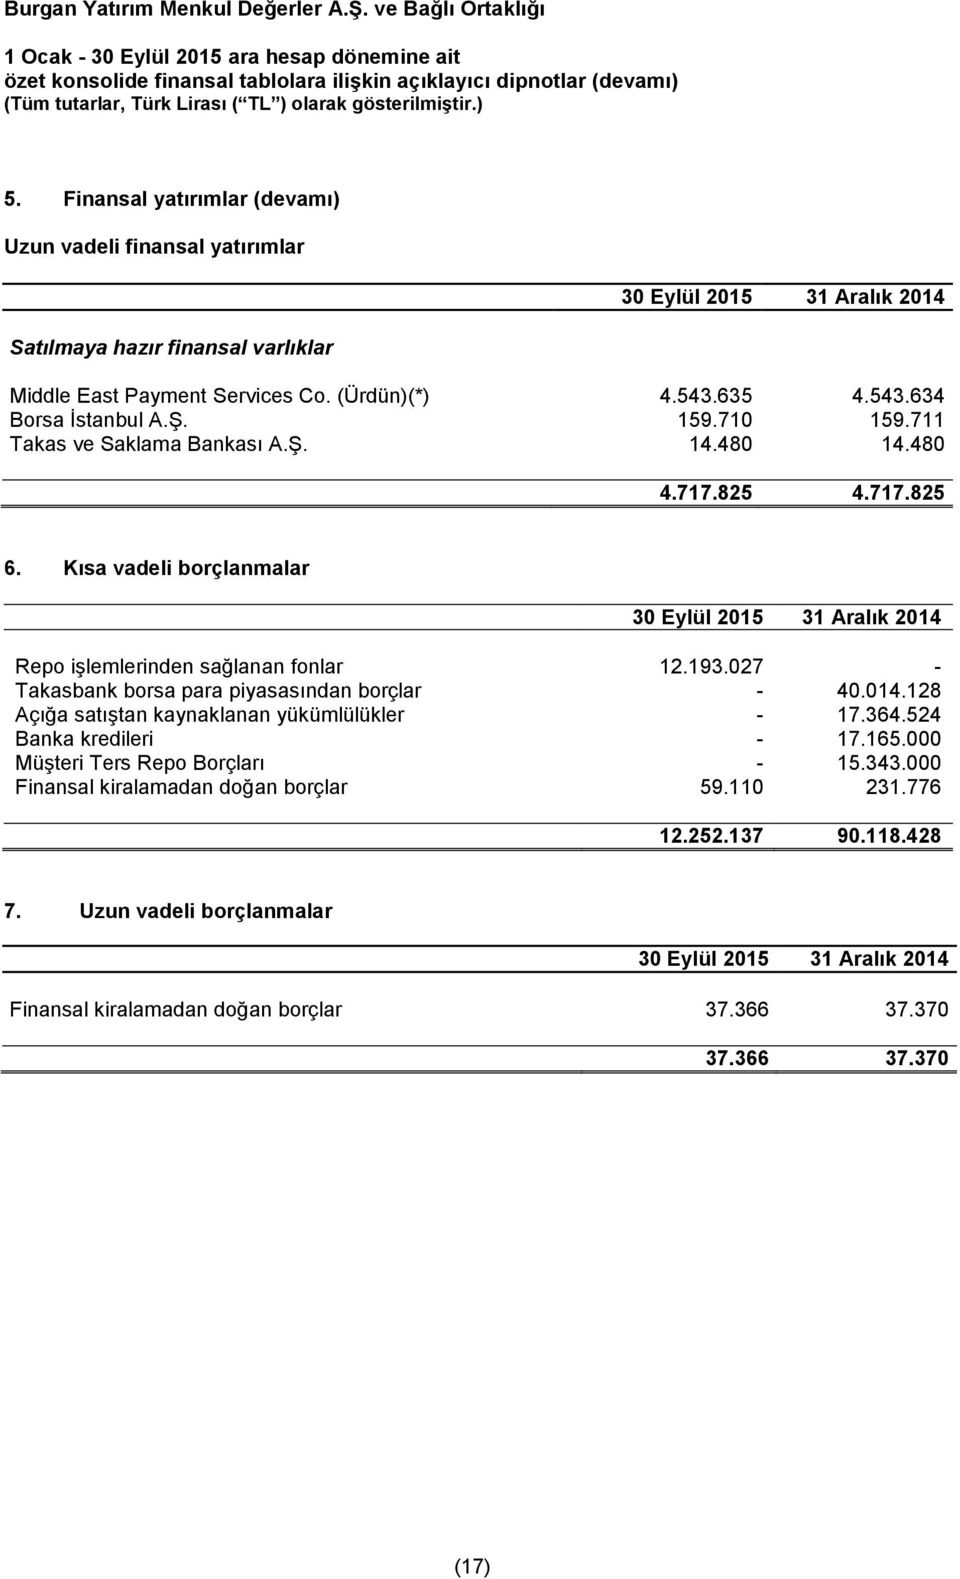 027 - Takasbank borsa para piyasasından borçlar - 40.014.128 Açığa satıştan kaynaklanan yükümlülükler - 17.364.524 Banka kredileri - 17.165.